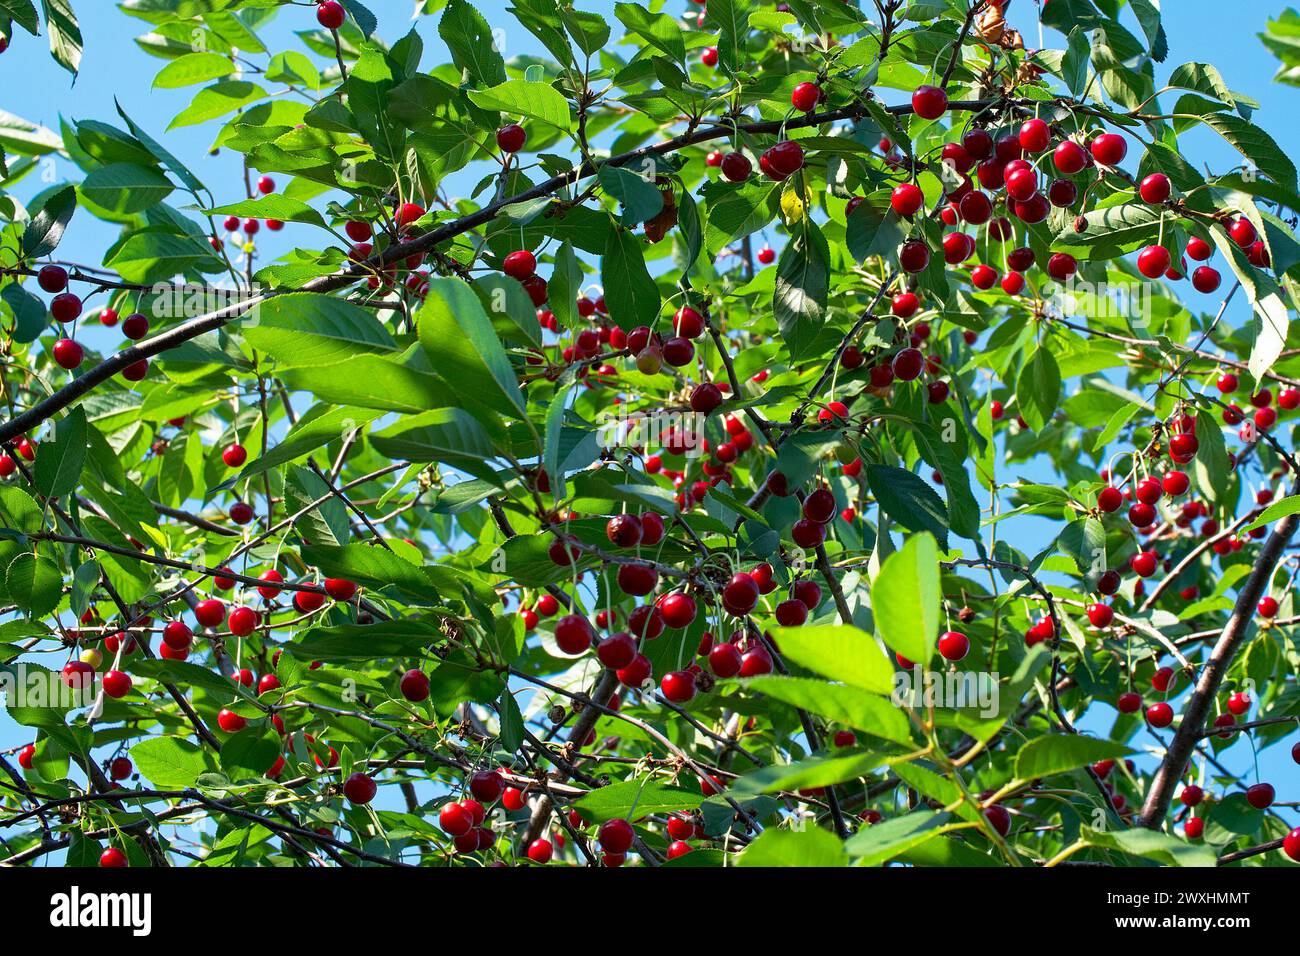 Un'immagine ravvicinata di ciliegie mature appese ai rami, circondate da foglie verdi vibranti su uno sfondo morbido, che trasmettono un tocco di freschezza e naturalezza Foto Stock